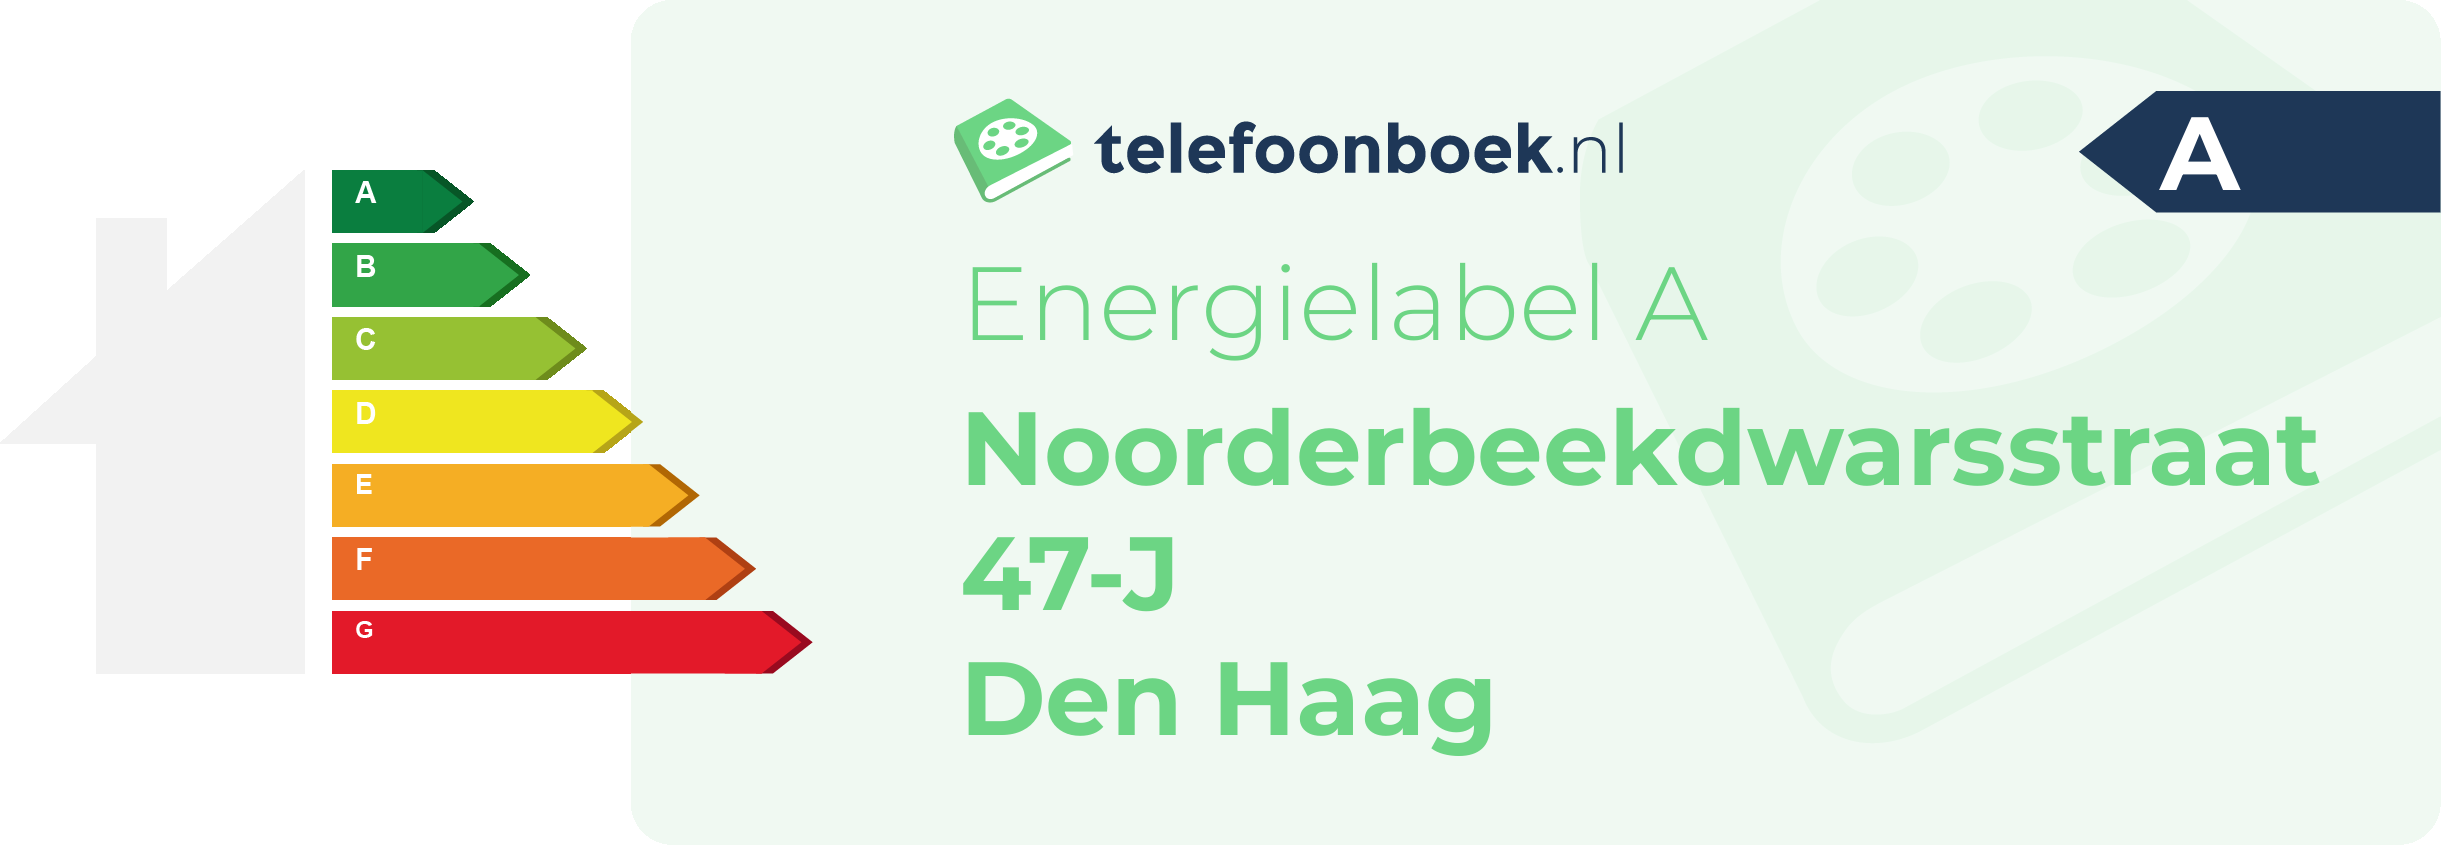 Energielabel Noorderbeekdwarsstraat 47-J Den Haag